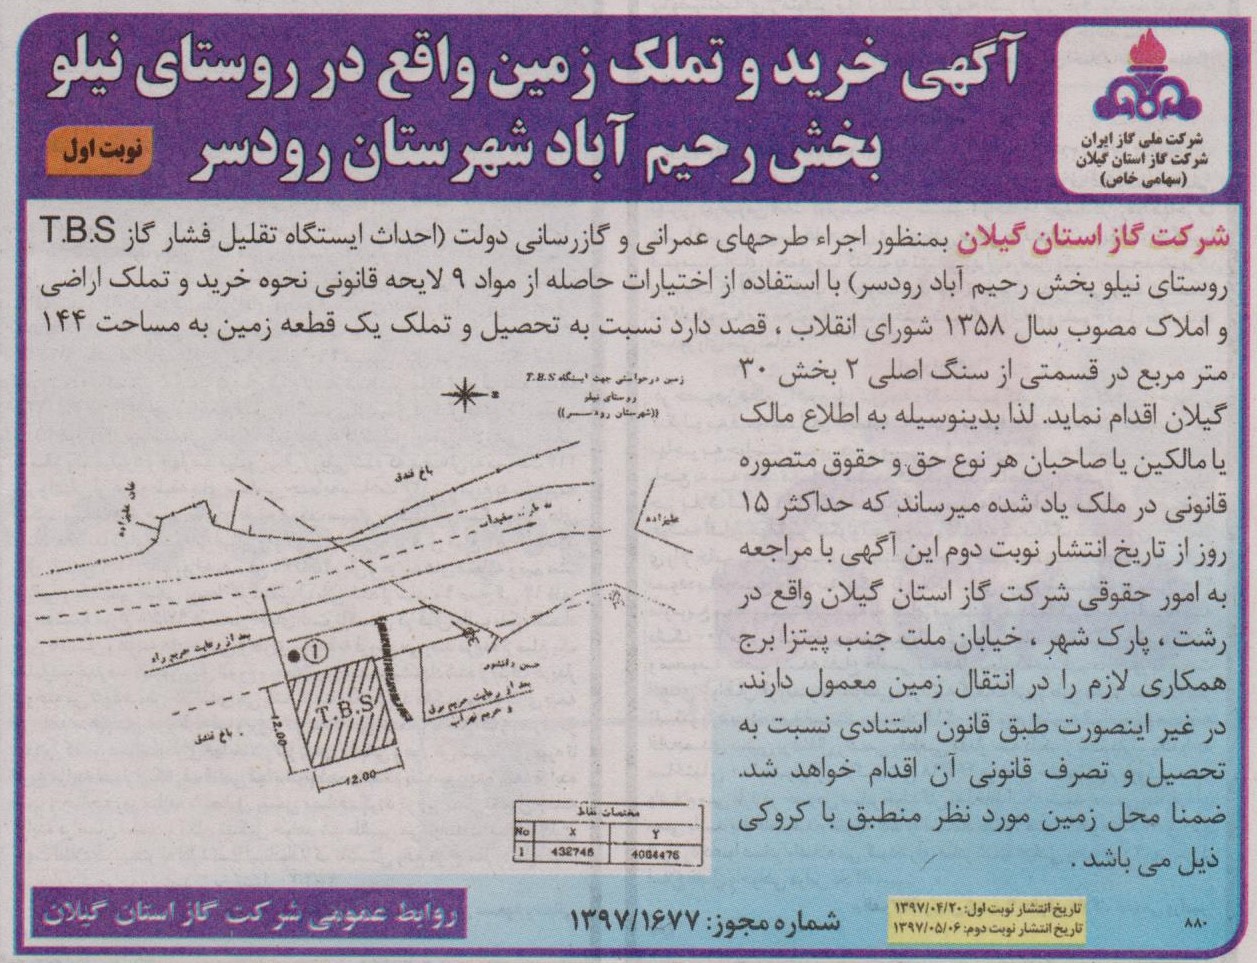 آگهی خرید و تملک زمین  واقع در روستای نیلو از توابع رحیم آباد رودسر - 20 تیر